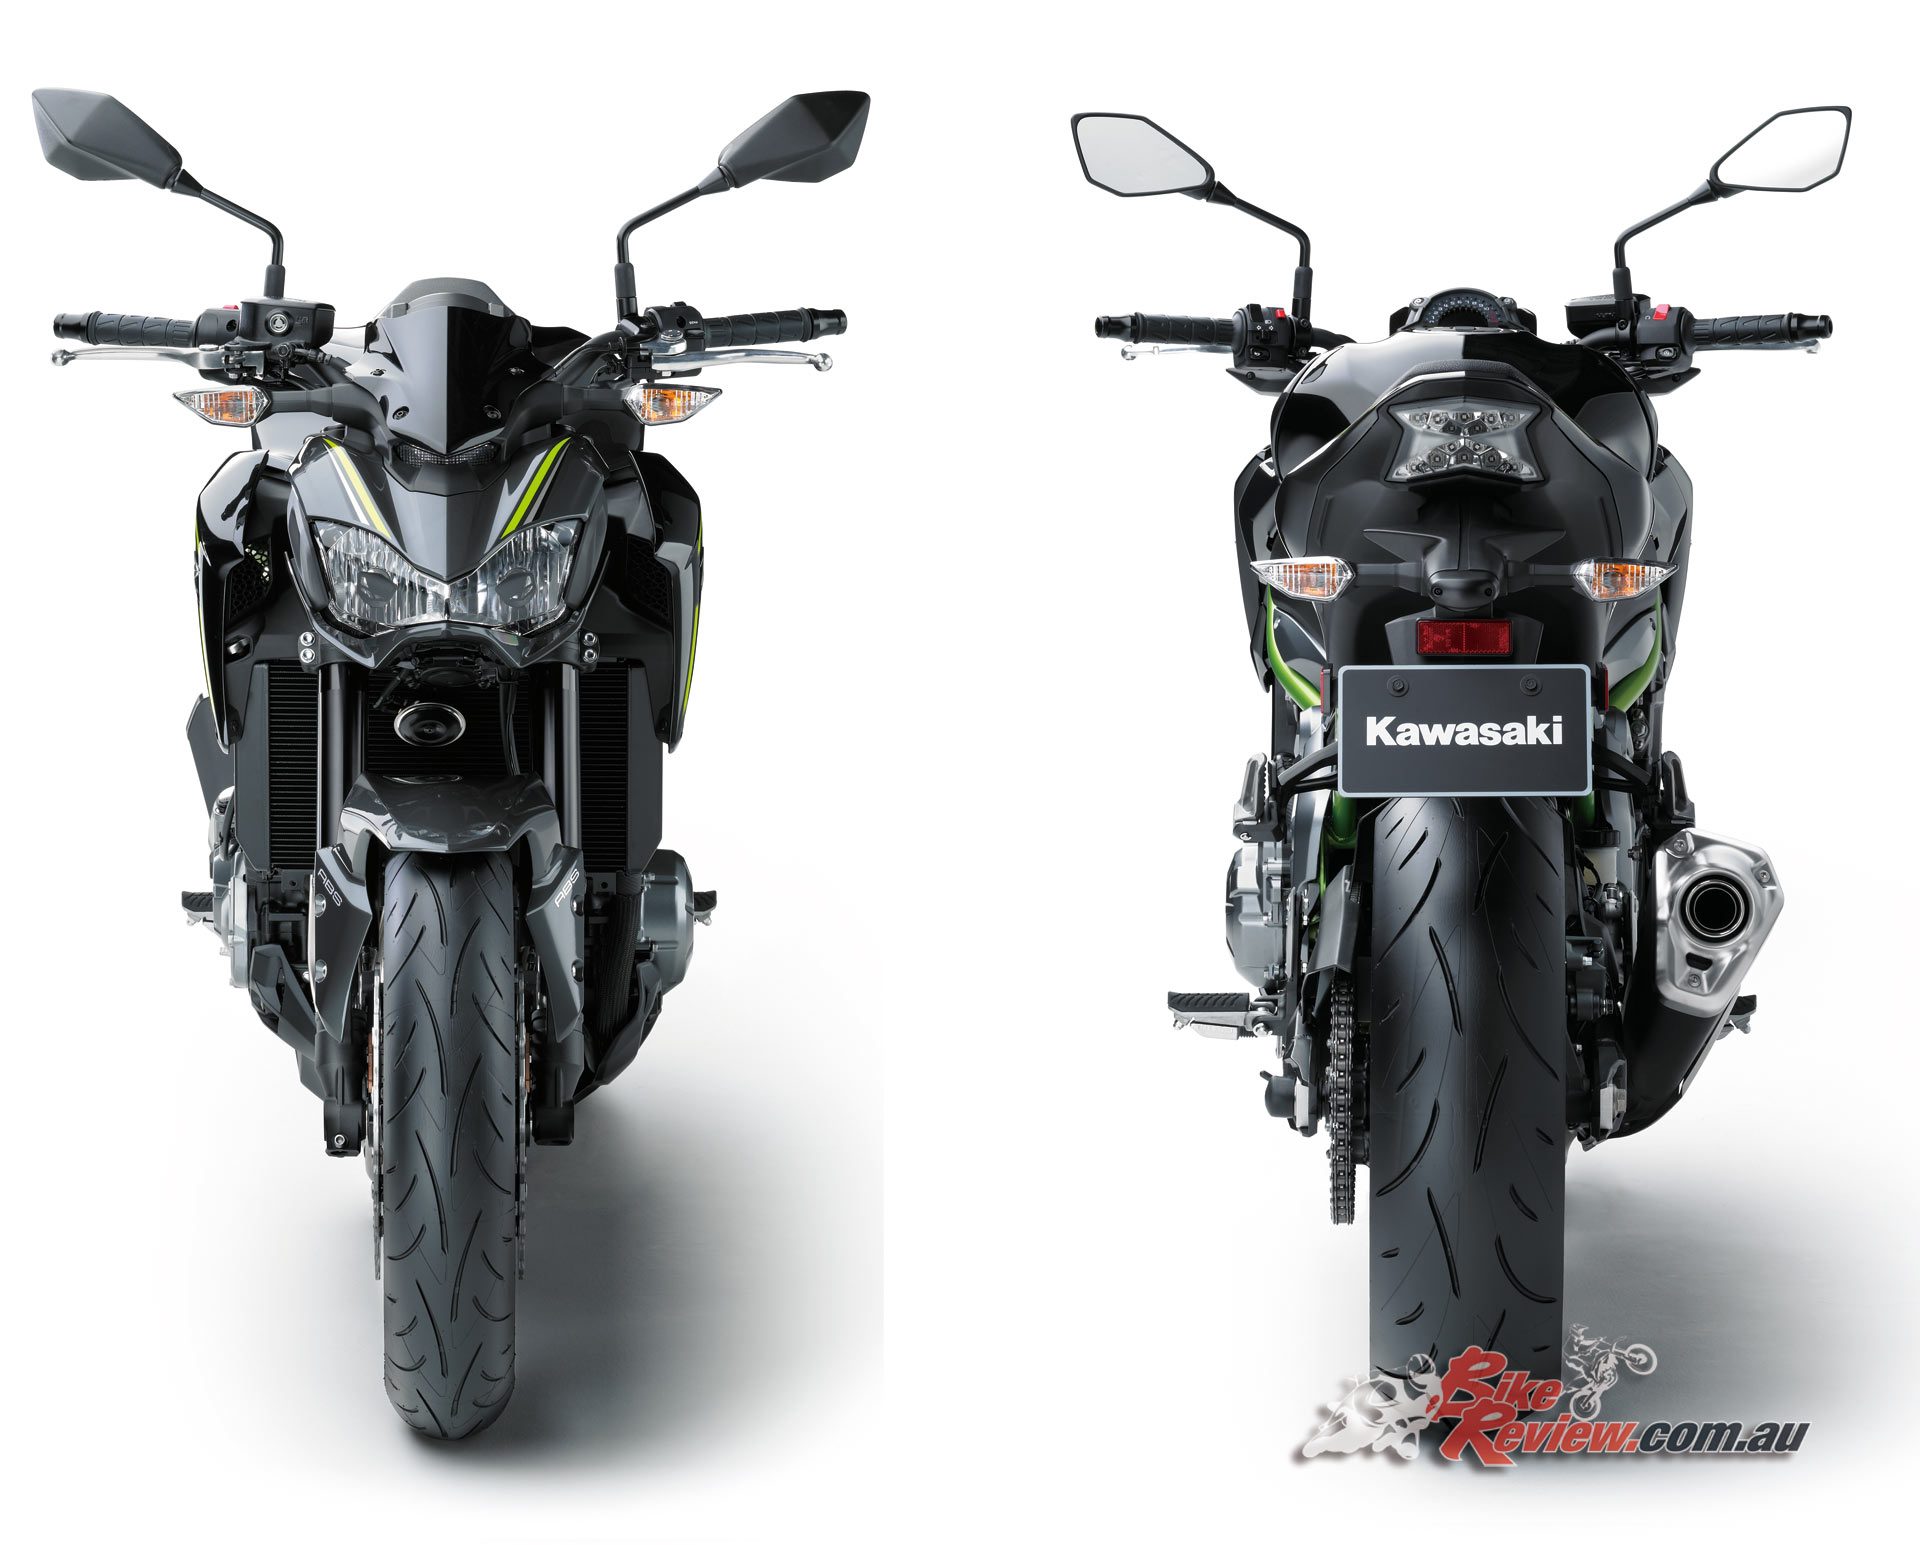 New 2017 Kawasaki Z900 - Bike Review